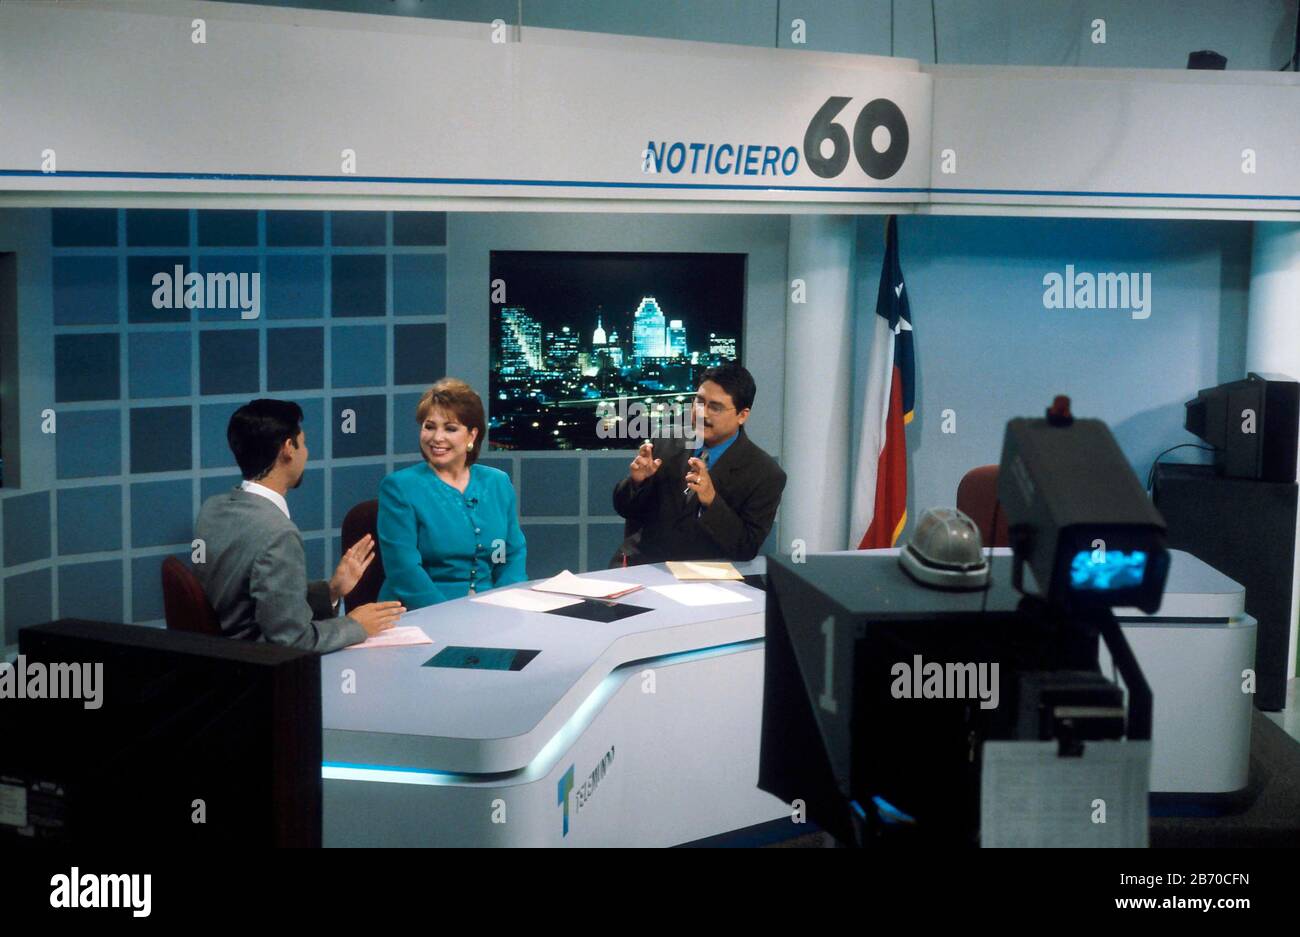 San Antonio, Texas: Spanische und spanische Nachrichtensprecher während der Live-Übertragung aus dem Studio des spanischen Fernsehsenders Noticiero 60 im Telemundo-Netzwerk. ©Bob Daemmrich Stockfoto